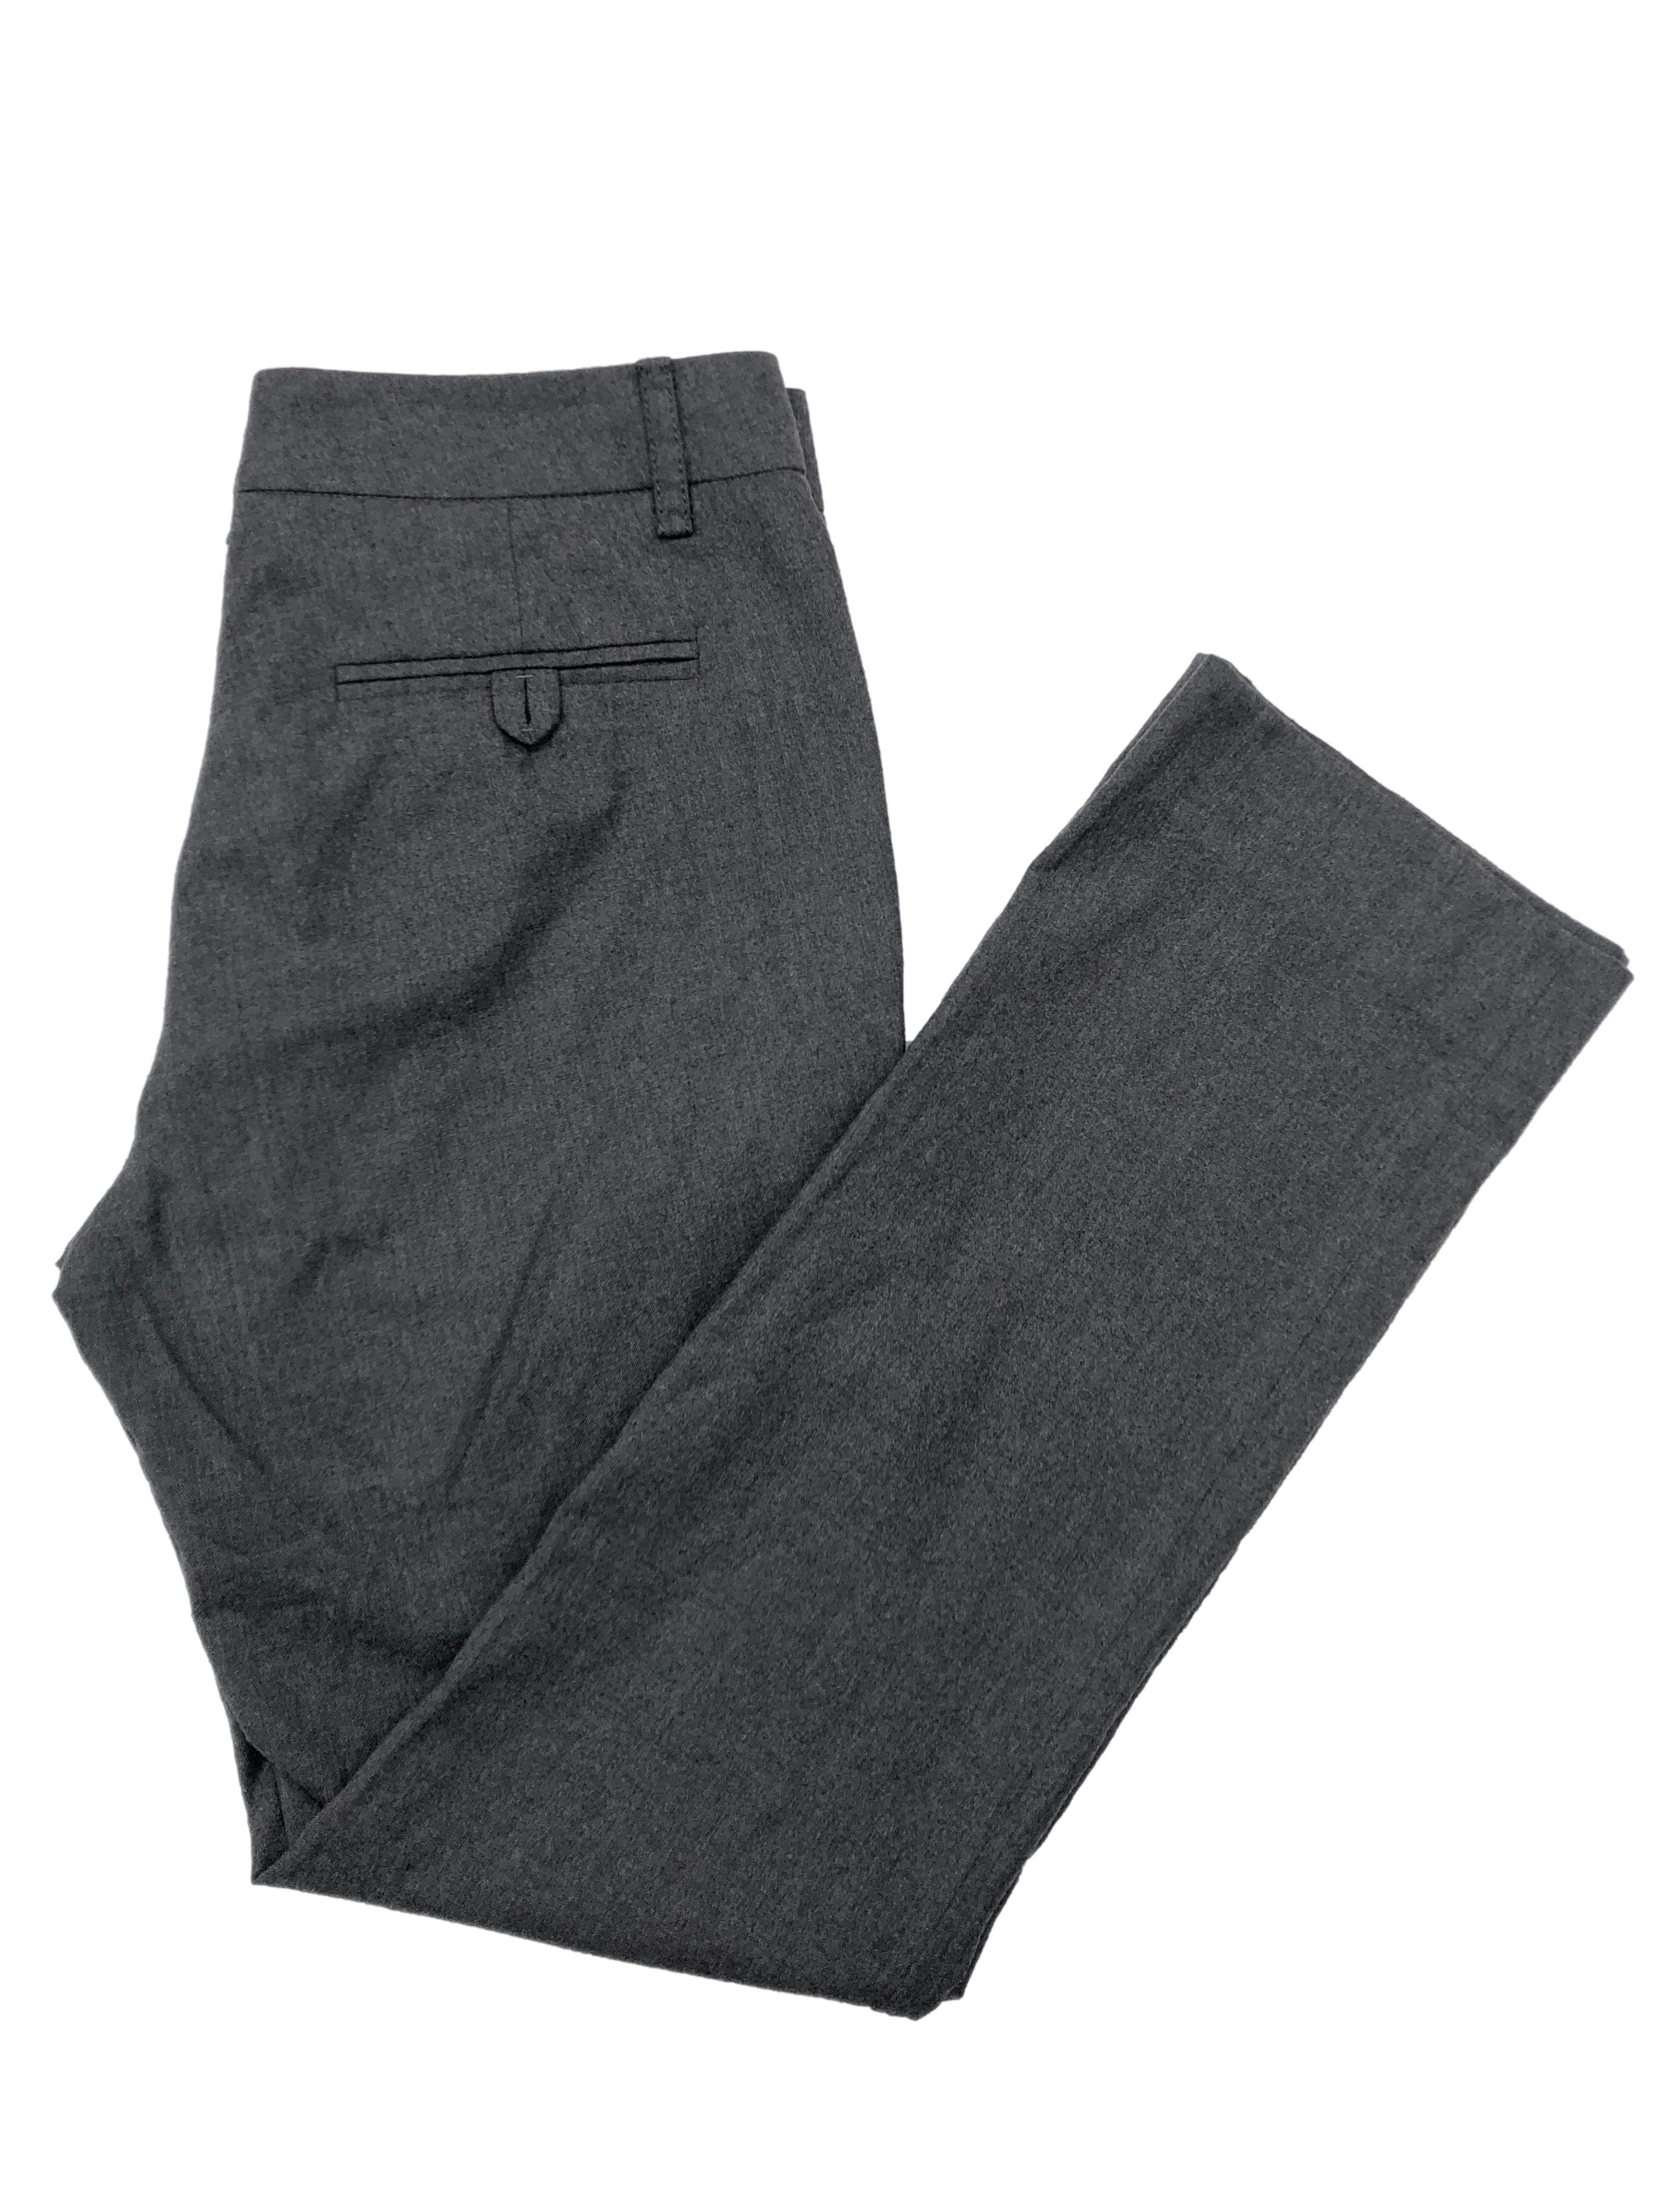 Pantalón formal Gucci 97% lana gris, corte recto, con botón, broche, cierre y bolsillos delanteros. Cintura 74cm Tiro 24cm Largo 96cm